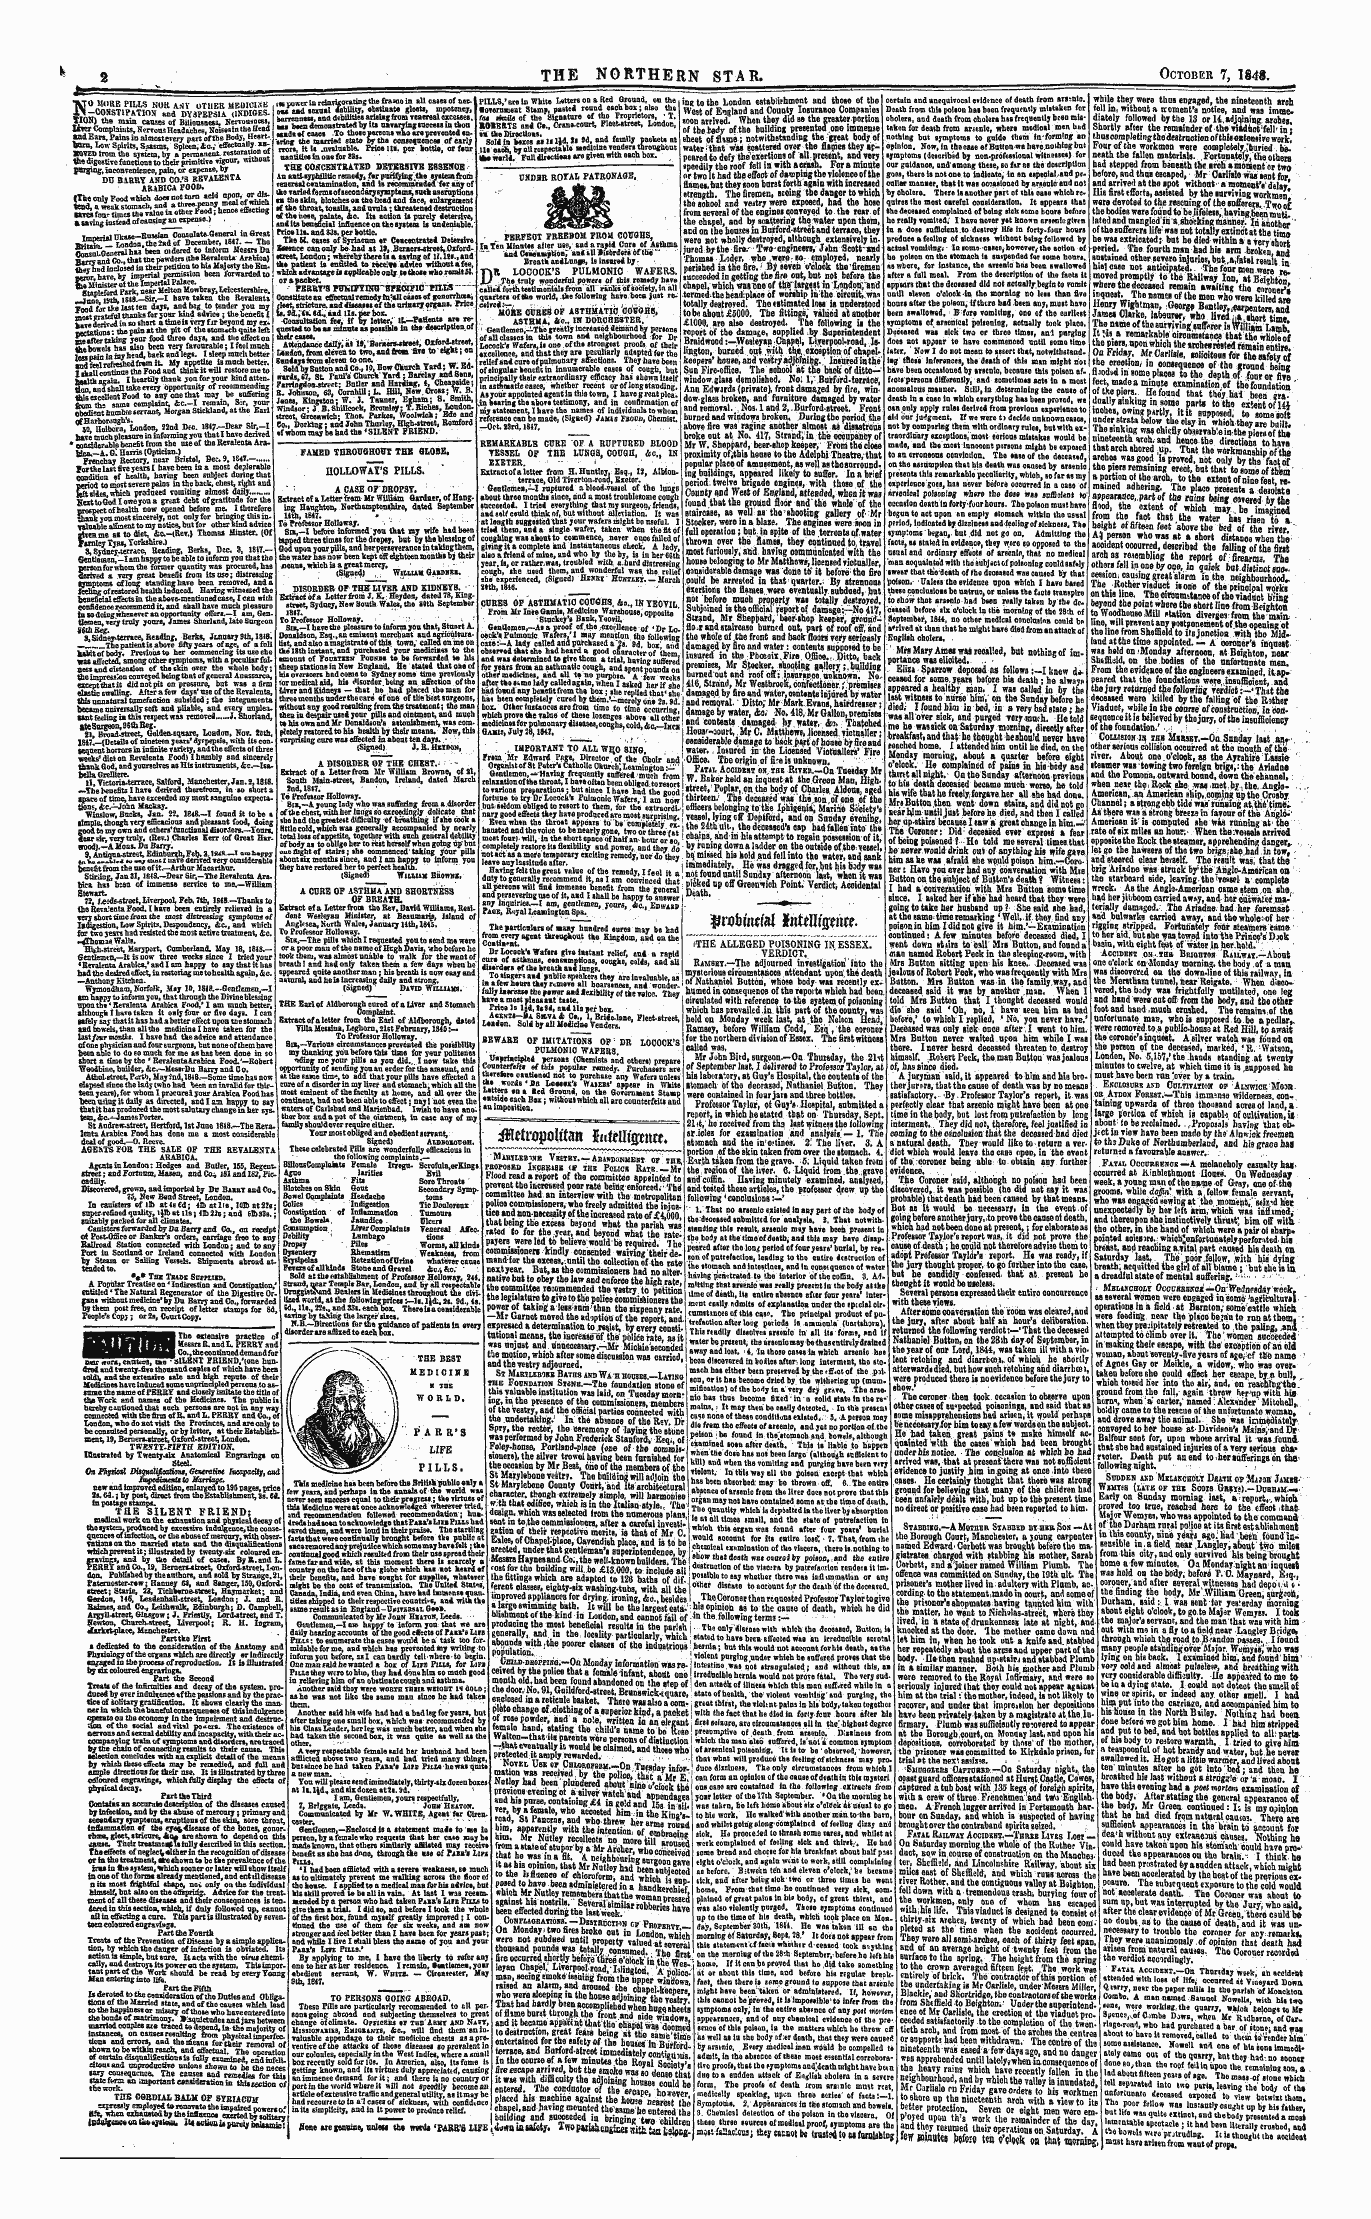 Northern Star (1837-1852): jS F Y, 1st edition - Hr^Tom Int Tui$Tntt.